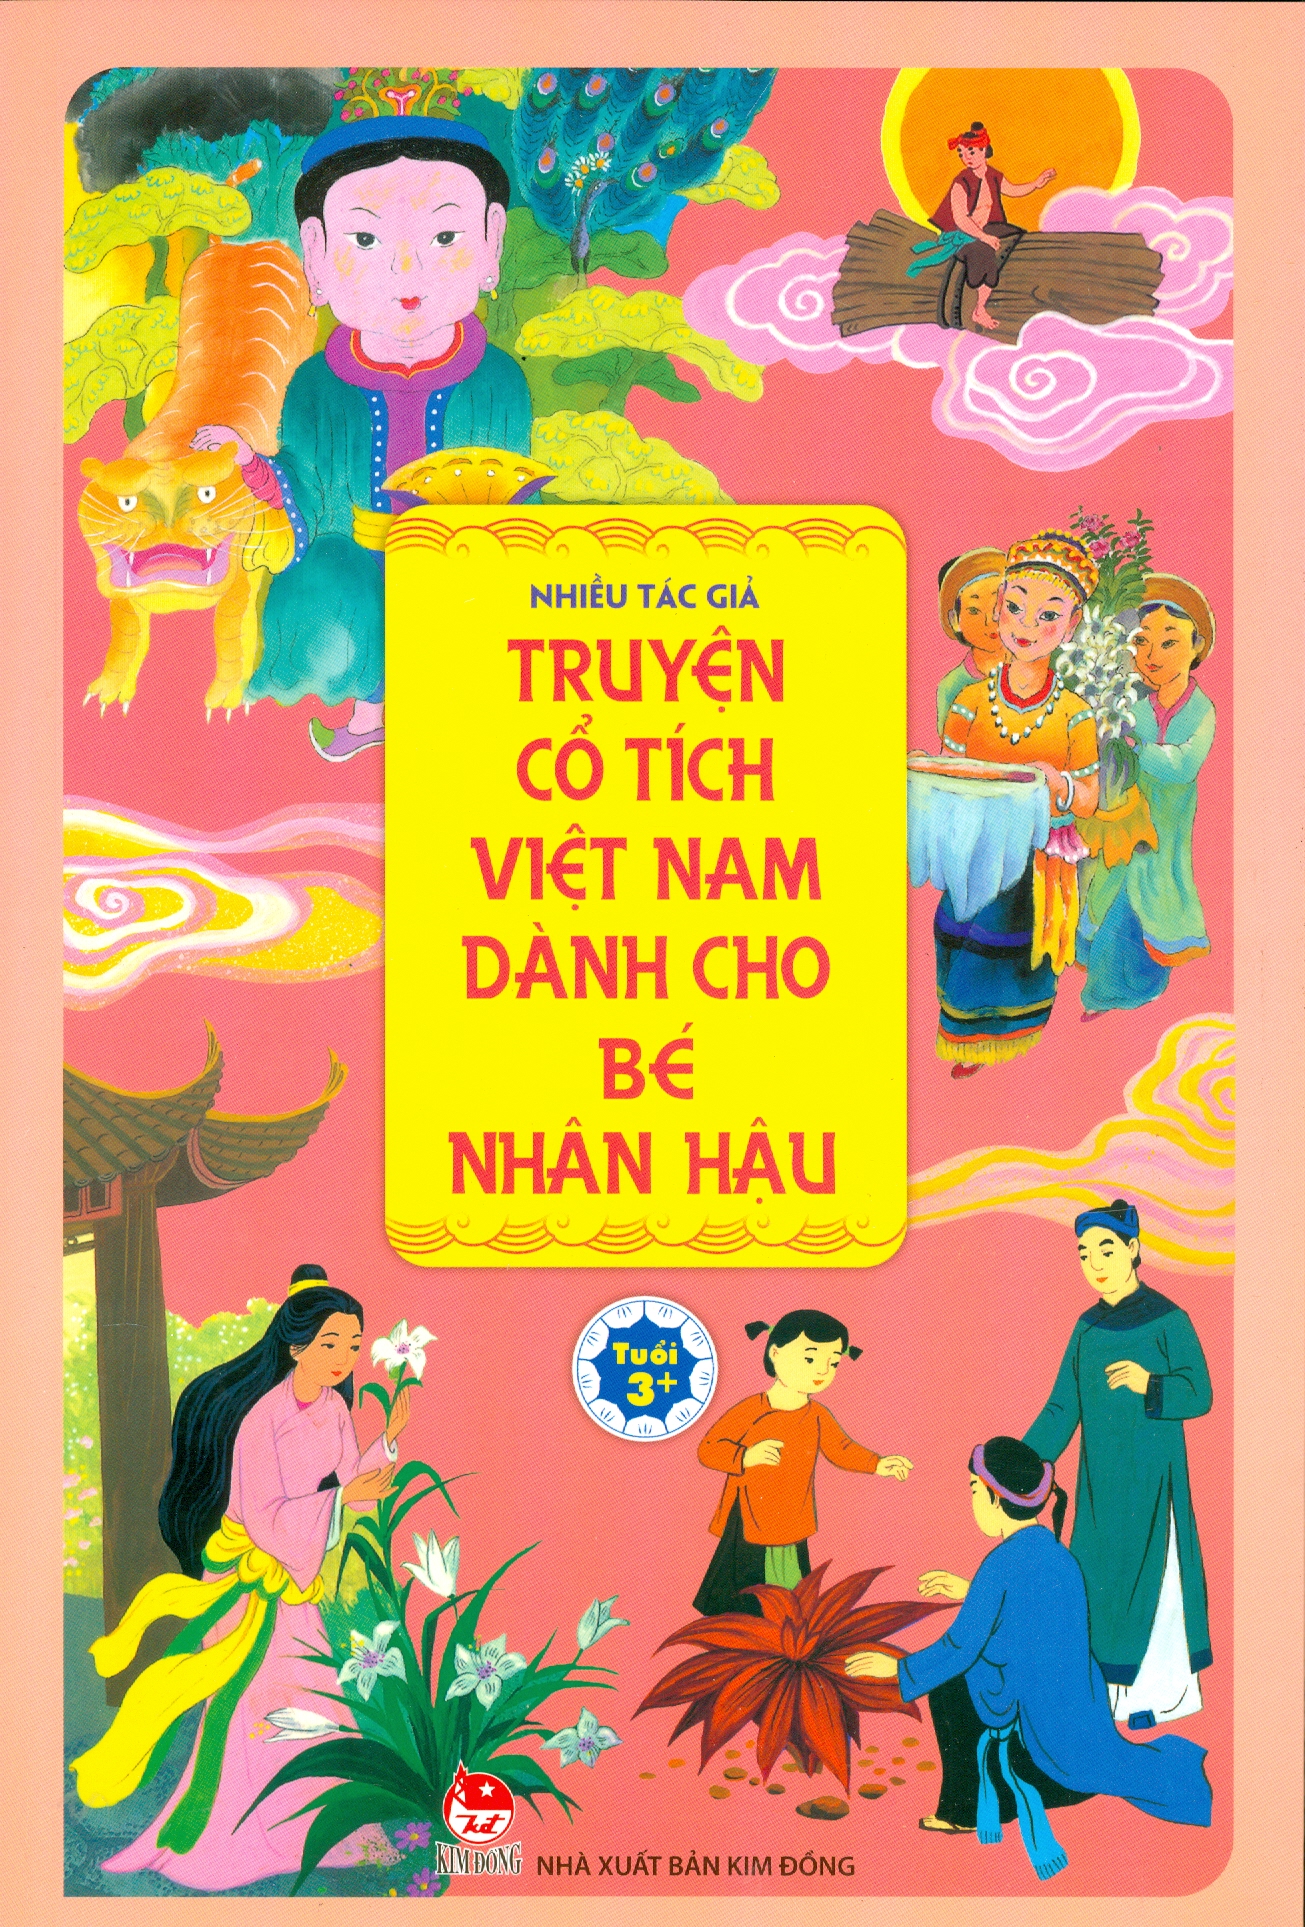 Truyện cổ tích Việt Nam là nguồn cảm hứng vô hạn cho những đứa trẻ nhân hậu. Hãy để đôi mắt của bạn được lung linh bởi hình ảnh đẹp và câu chuyện tuyệt vời mà những trang sách này chứa đựng.